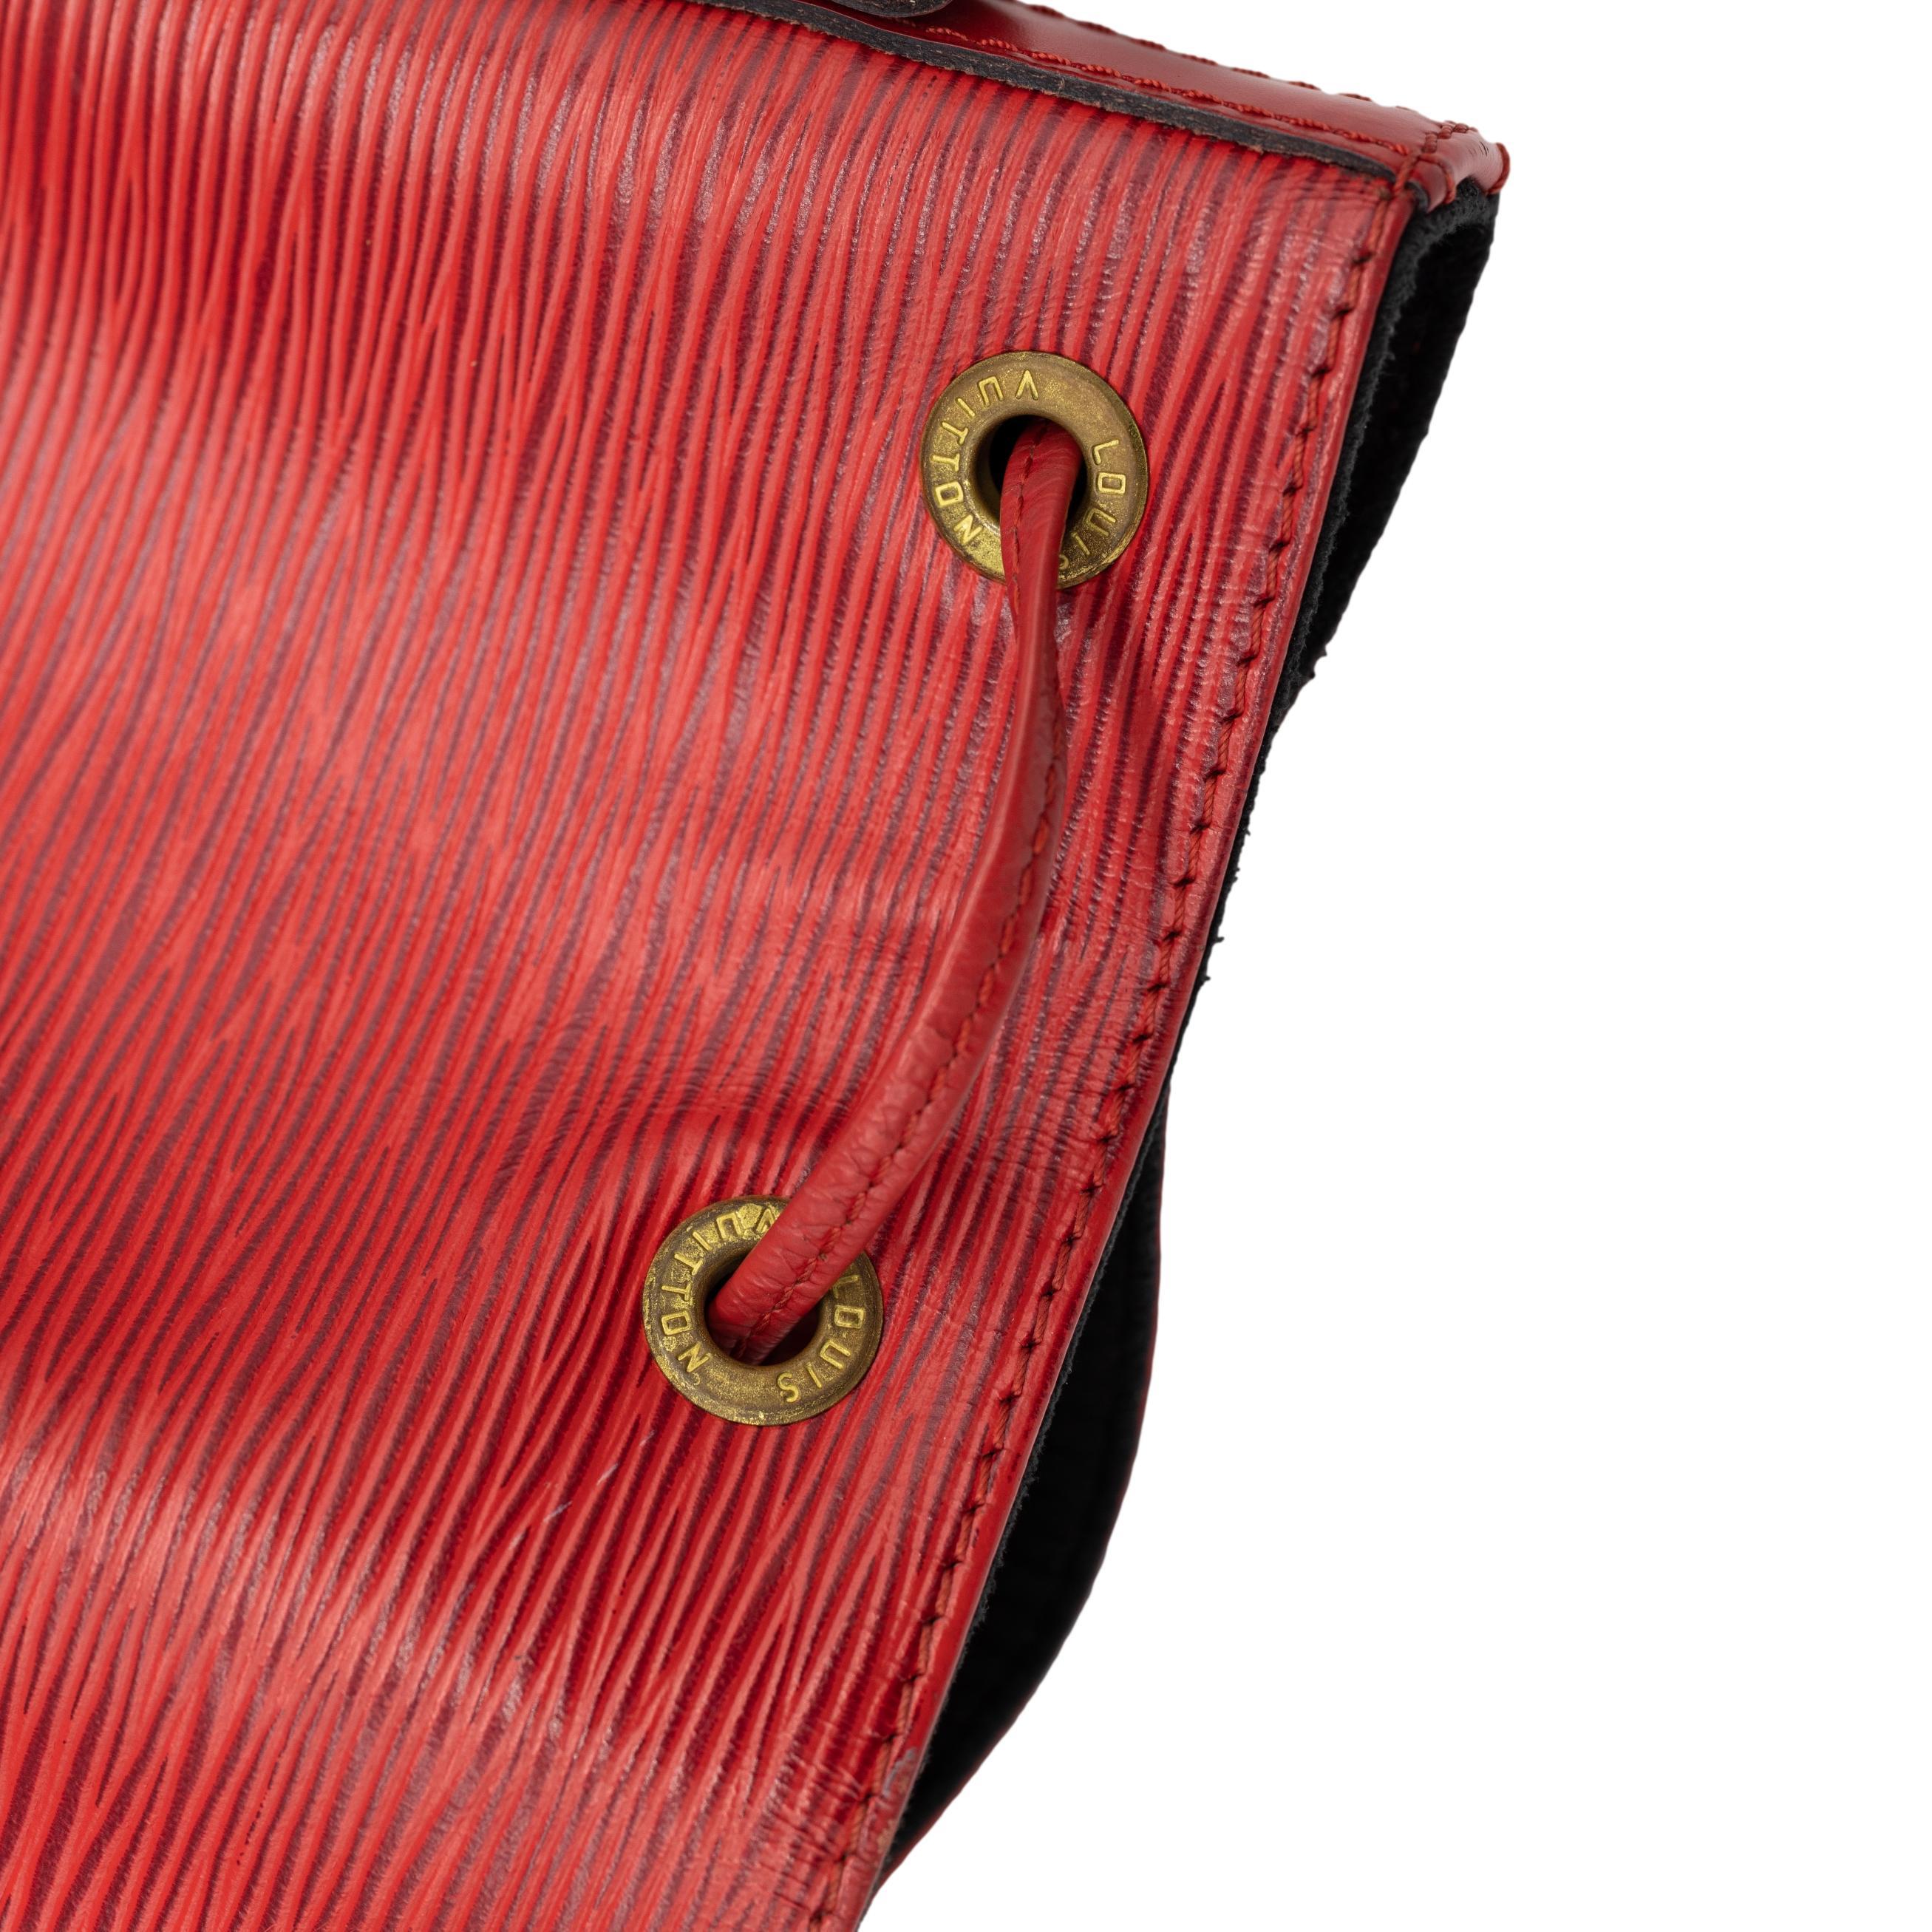 Louis Vuitton “Noe” PM Bucket Bag in Red EPI Leather Shoulder Bag, France 1993. 8